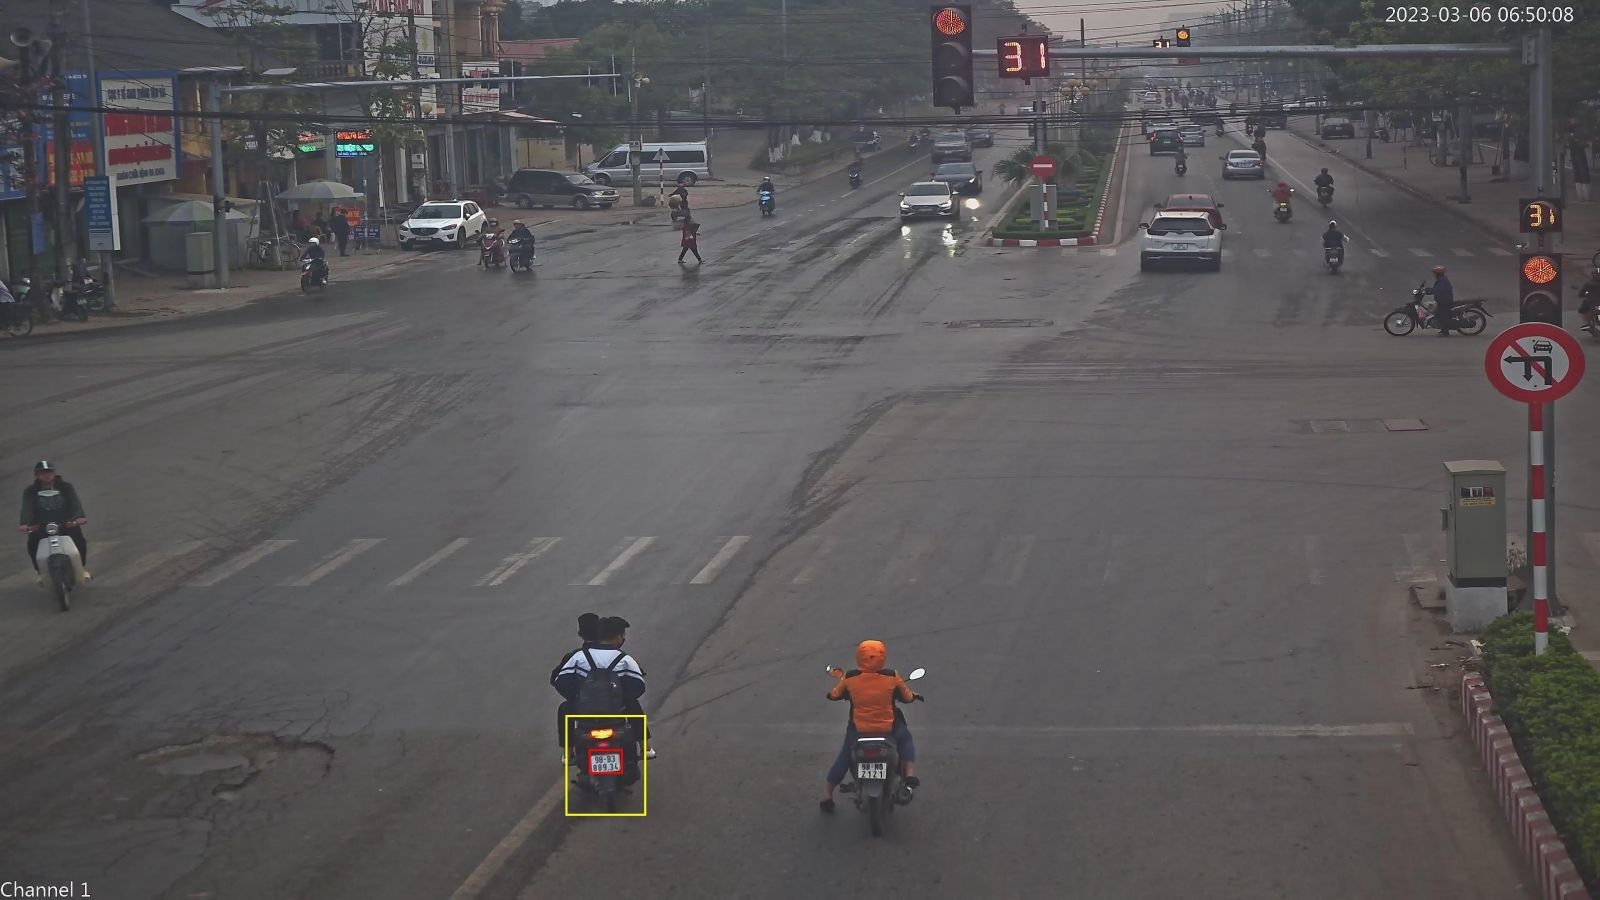 Xe mô tô biển số 98B3-889.34 vi phạm vượt đèn đỏ, không đôi mũ bảo hiểm tại ngã tư Xương Giang - Quang Trung - Vương Văn Trà lúc 6h50. Ảnh: Cắt từ clip